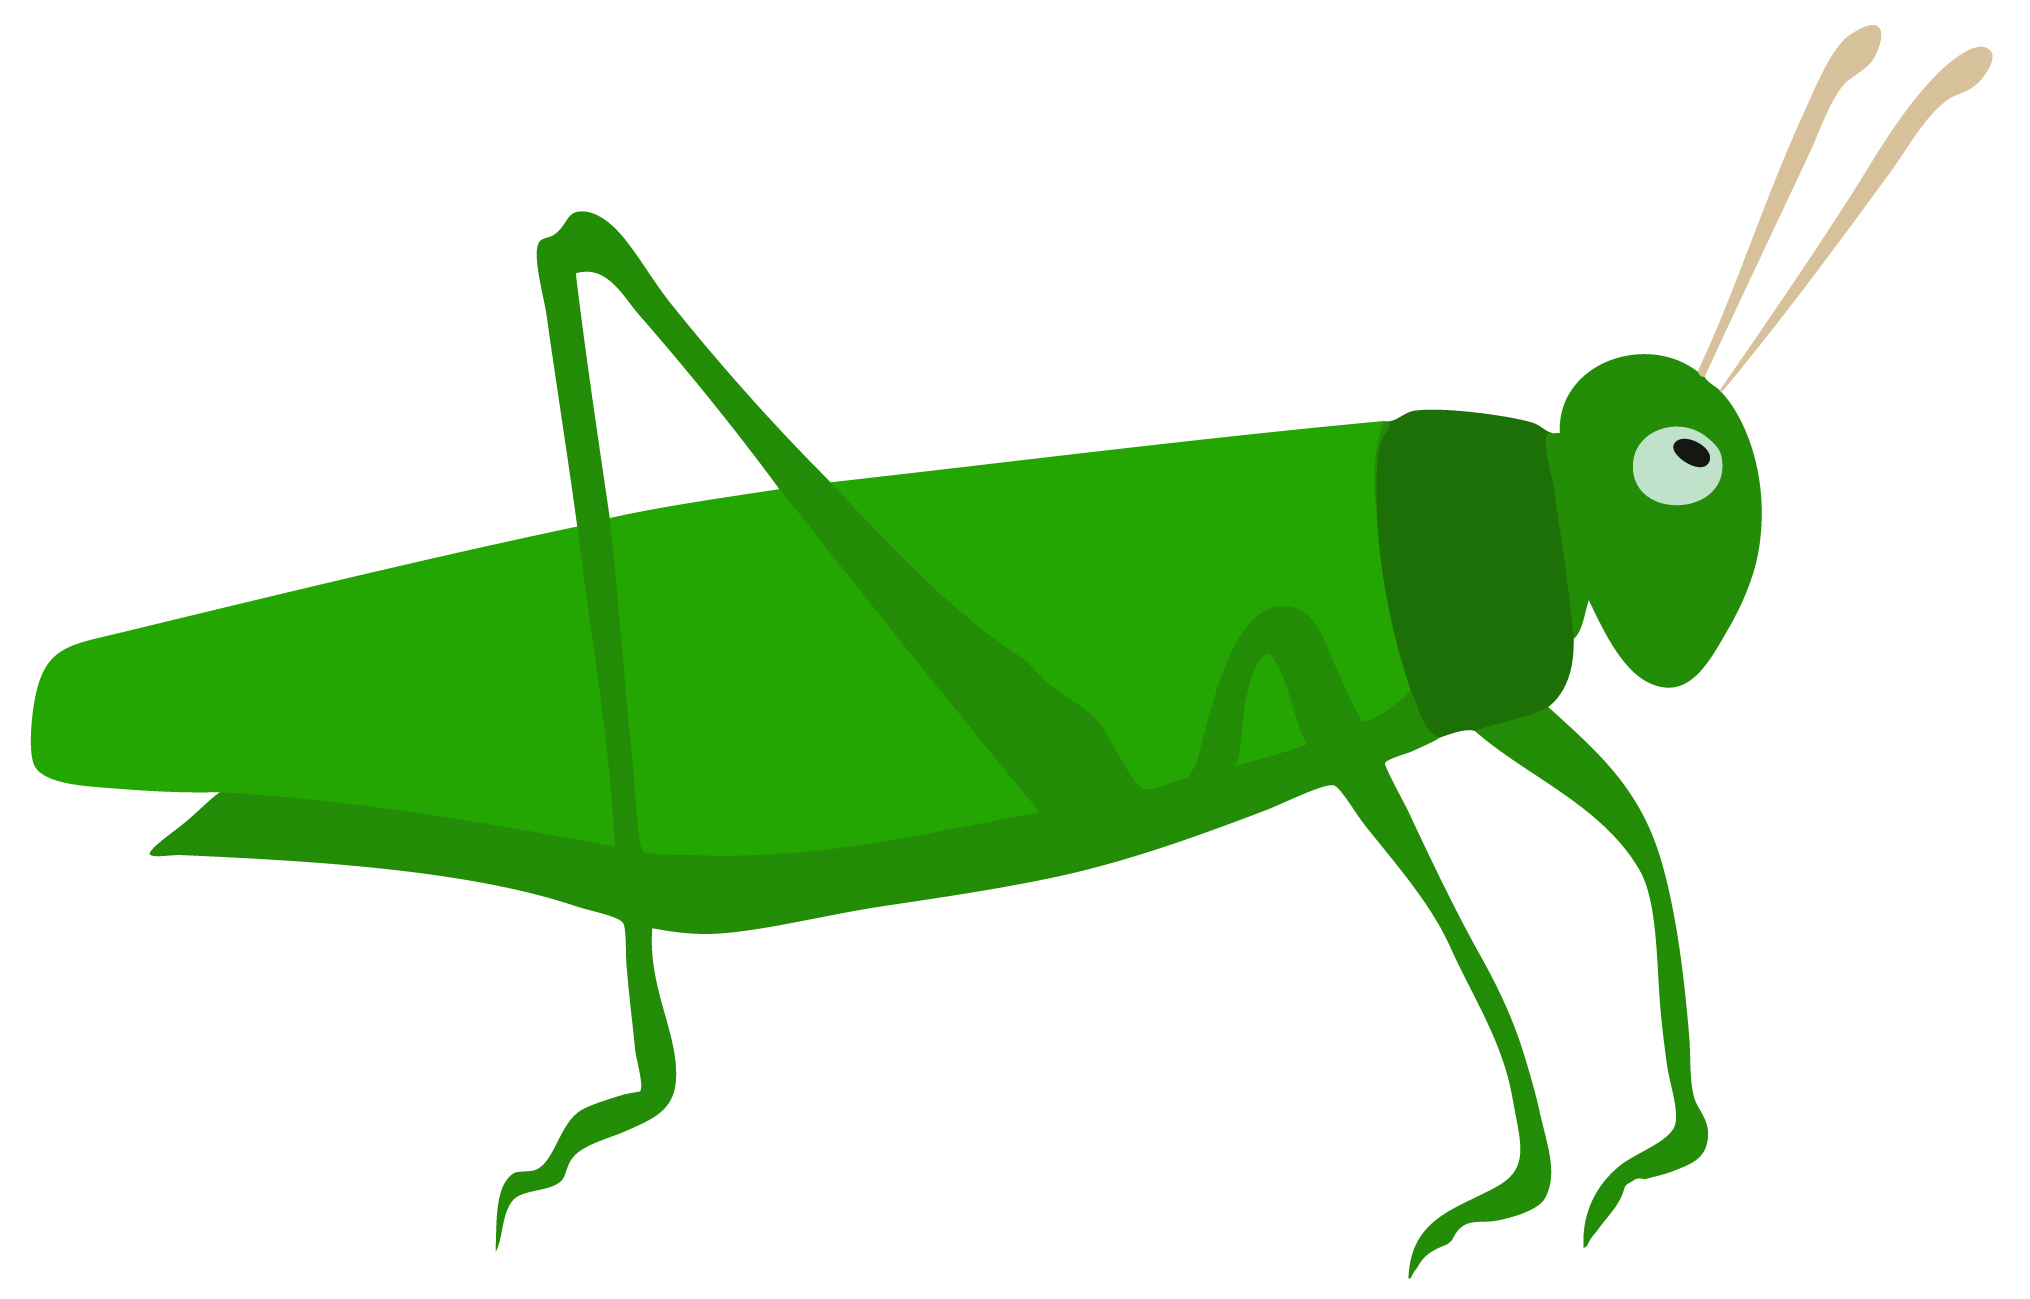 green grasshopper clipart - photo #20